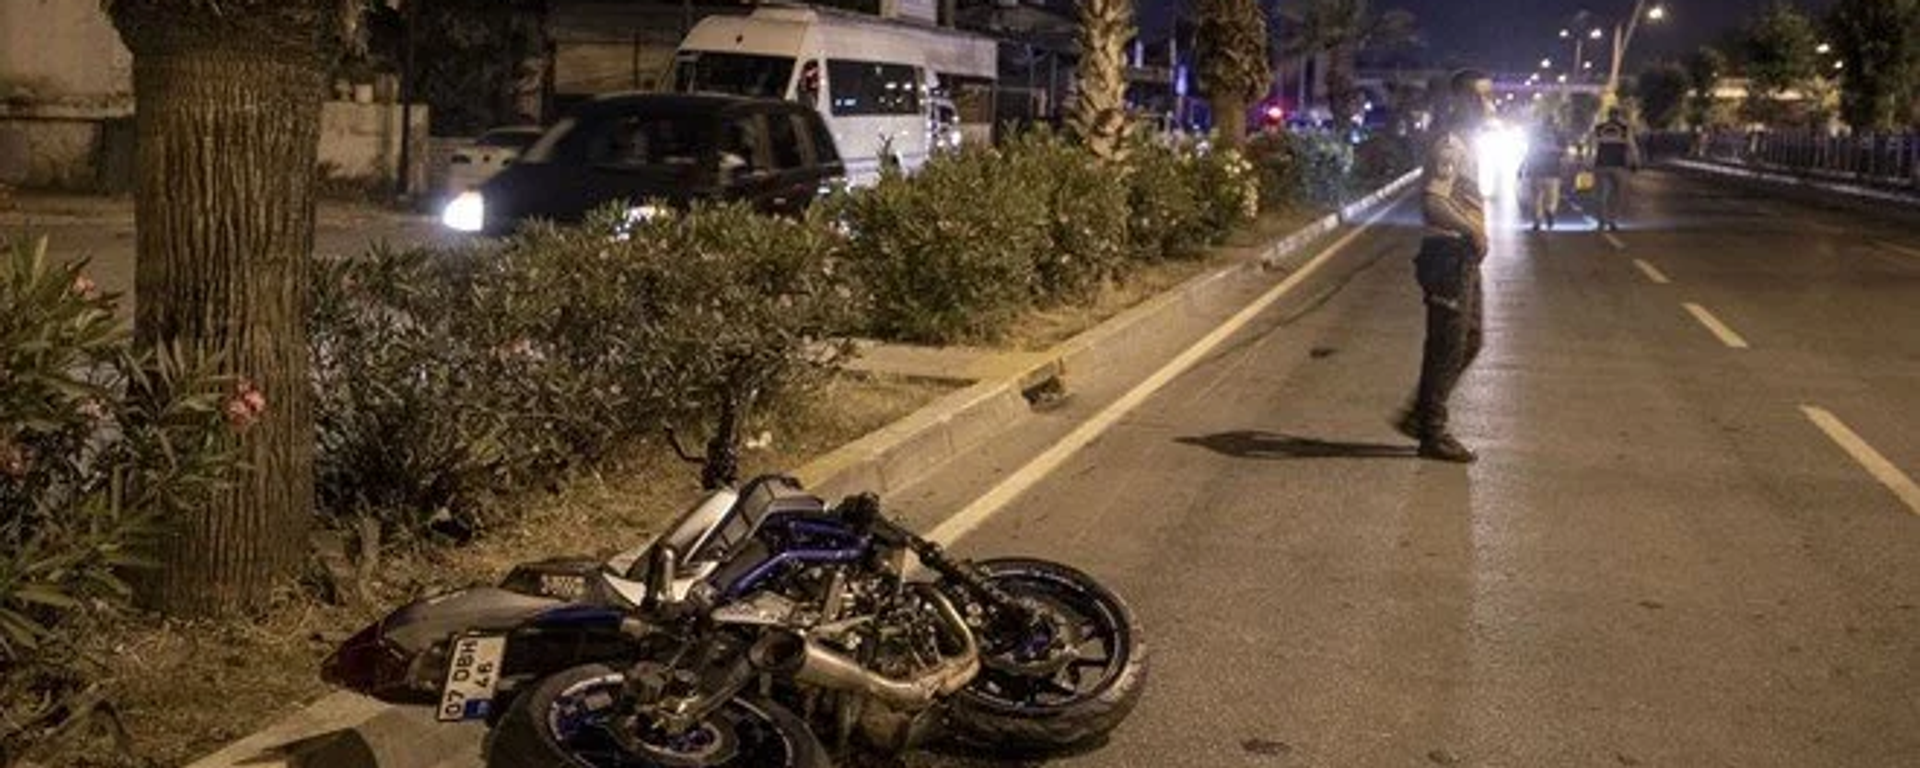 Antalya'da Gazi Bulvarı'nda motosiklet yayaya çarptı. Kazada 3 kişi yaşamını yitirdi. - Sputnik Türkiye, 1920, 14.06.2022